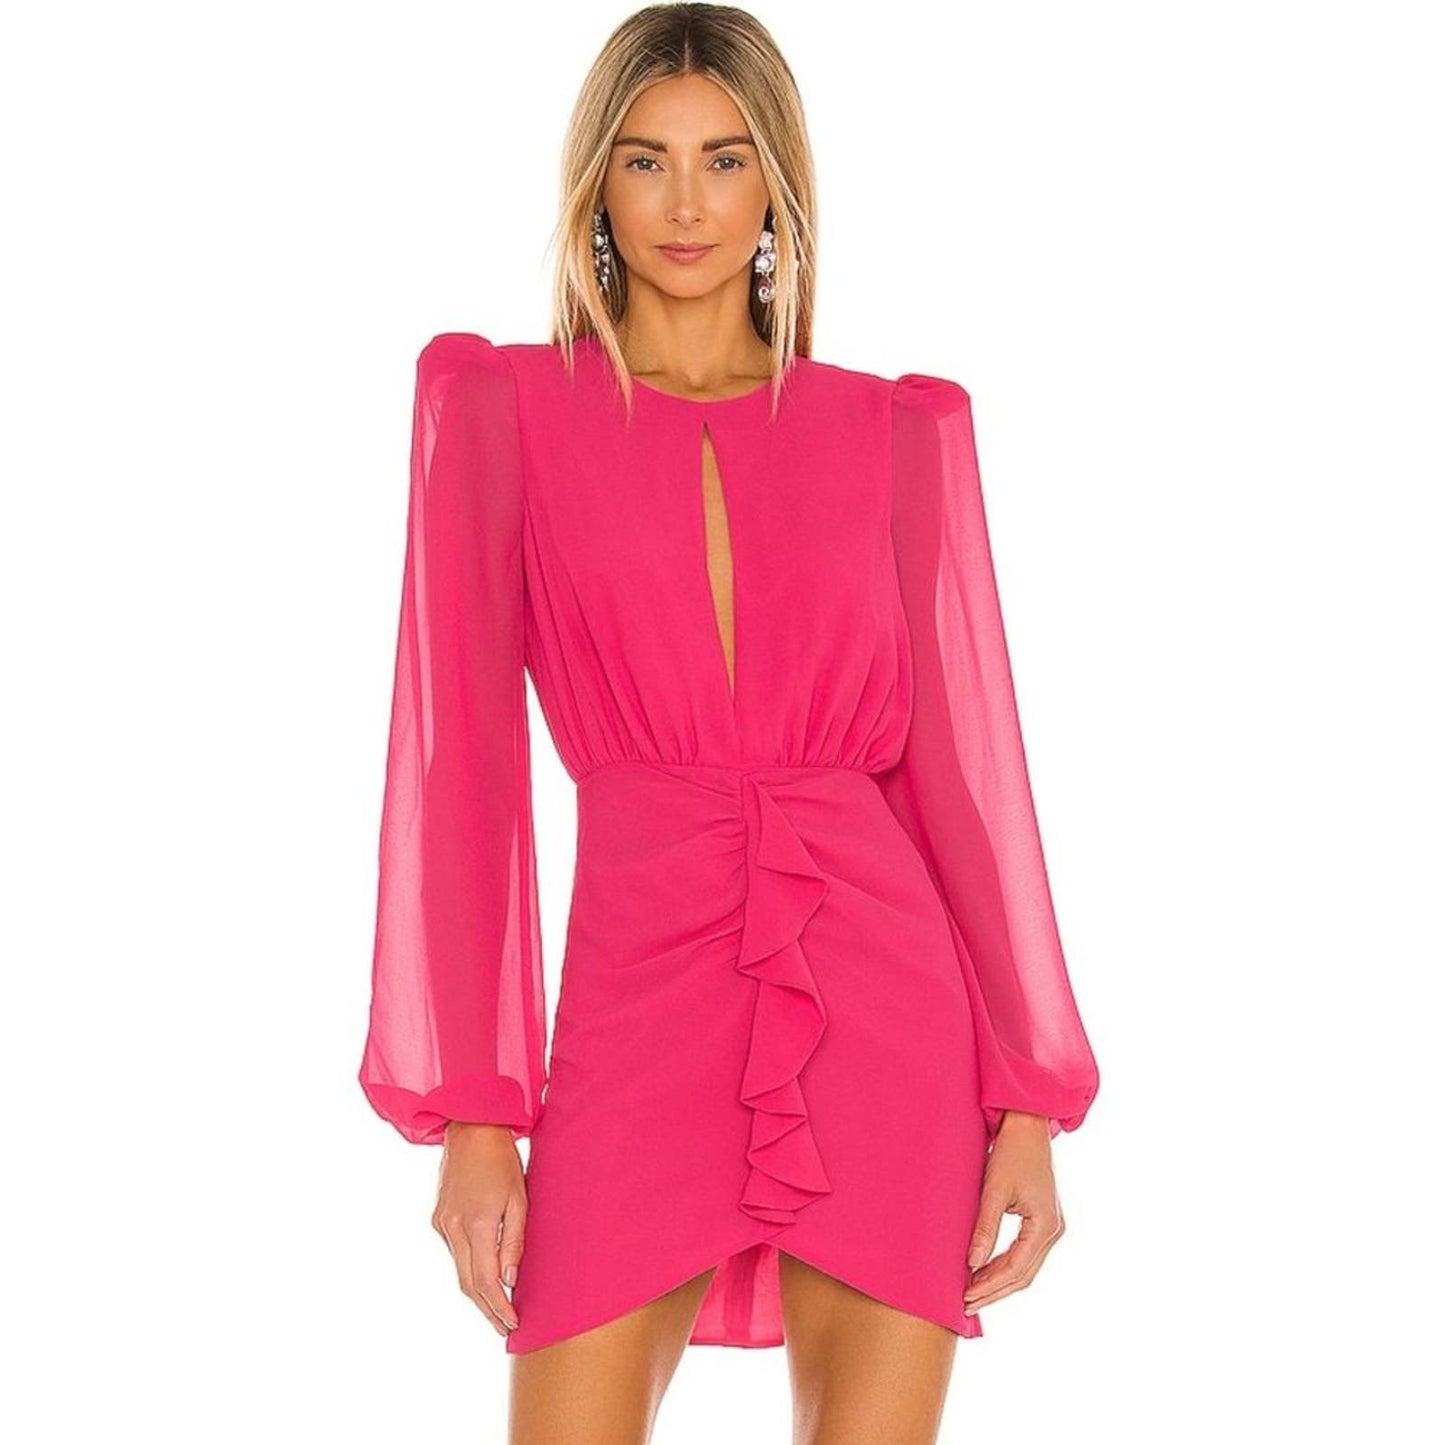 NBD Arijana Mini Dress in Hot Pink NWT Size Small